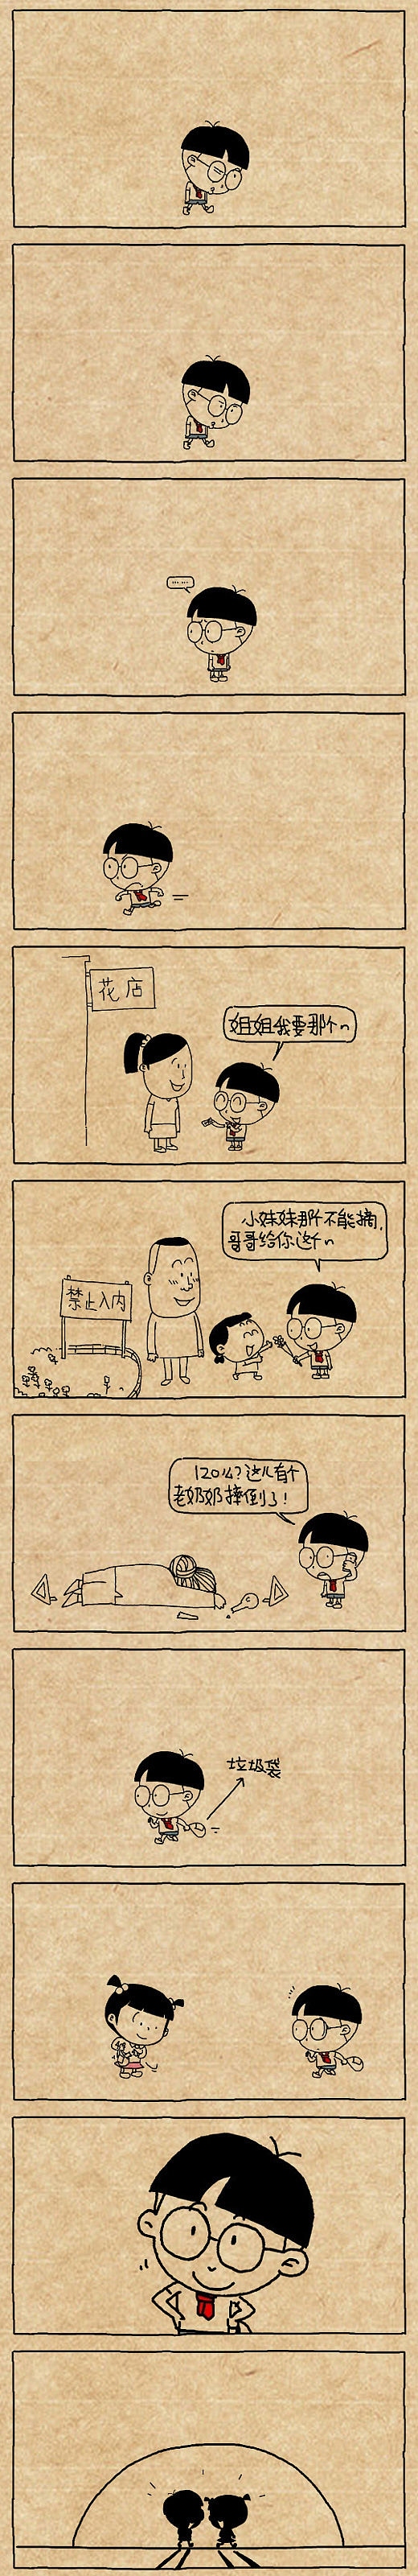 小明漫画——好孩子